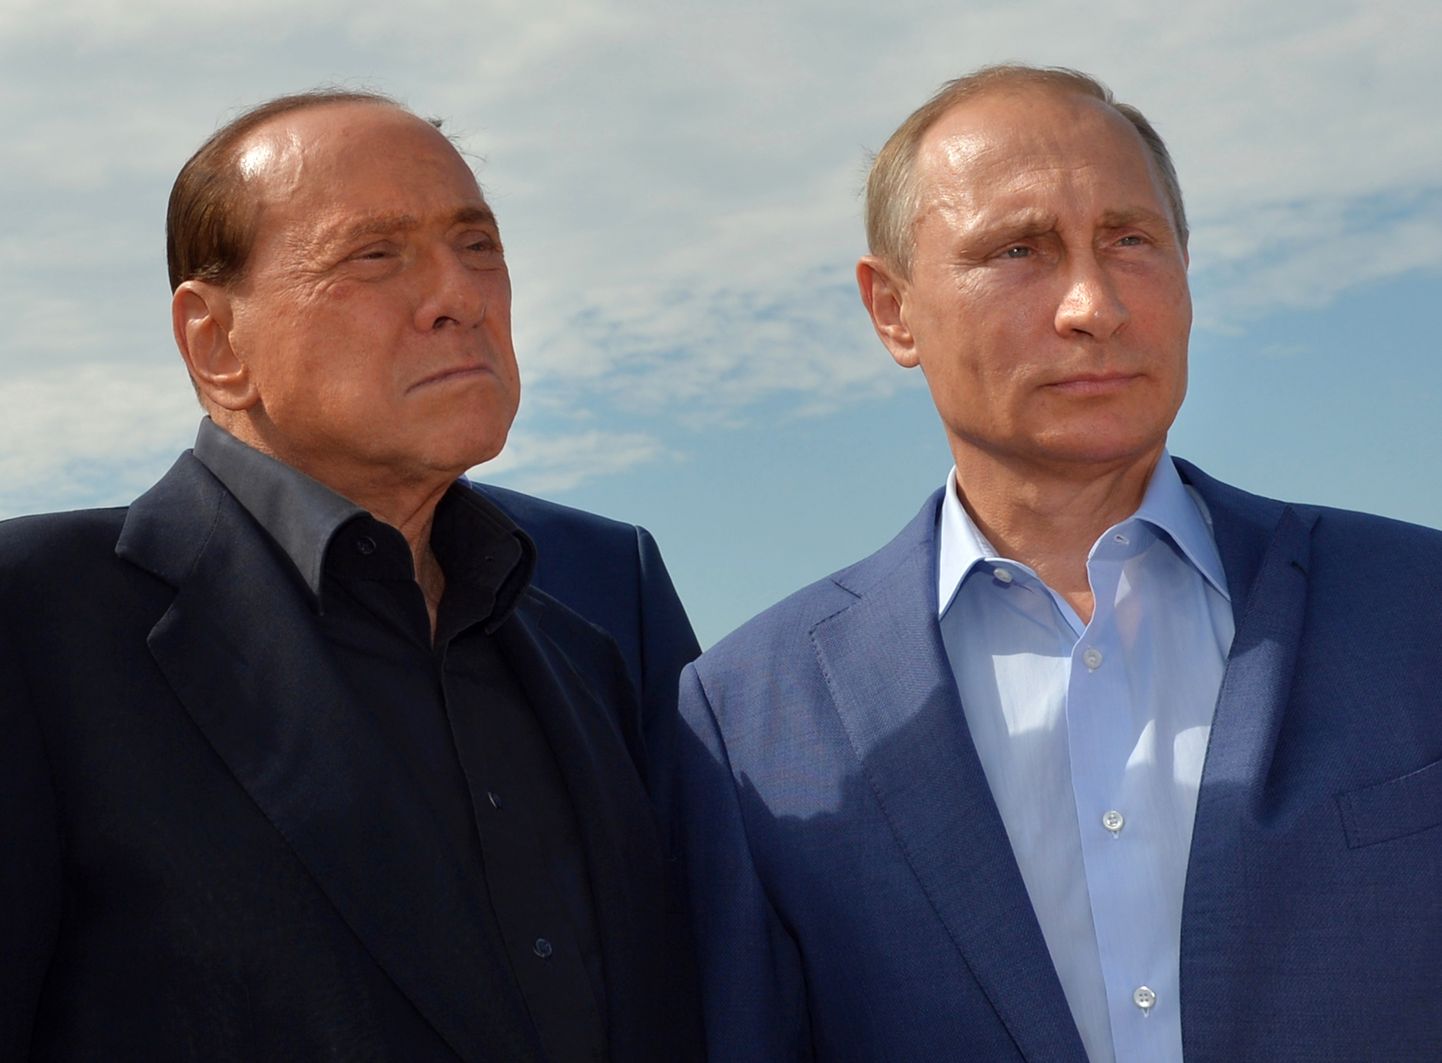 Silvio Berlusconi ning Vladimir Putin Krimmis Sevastopolos 11. septembril 2015. aastal.